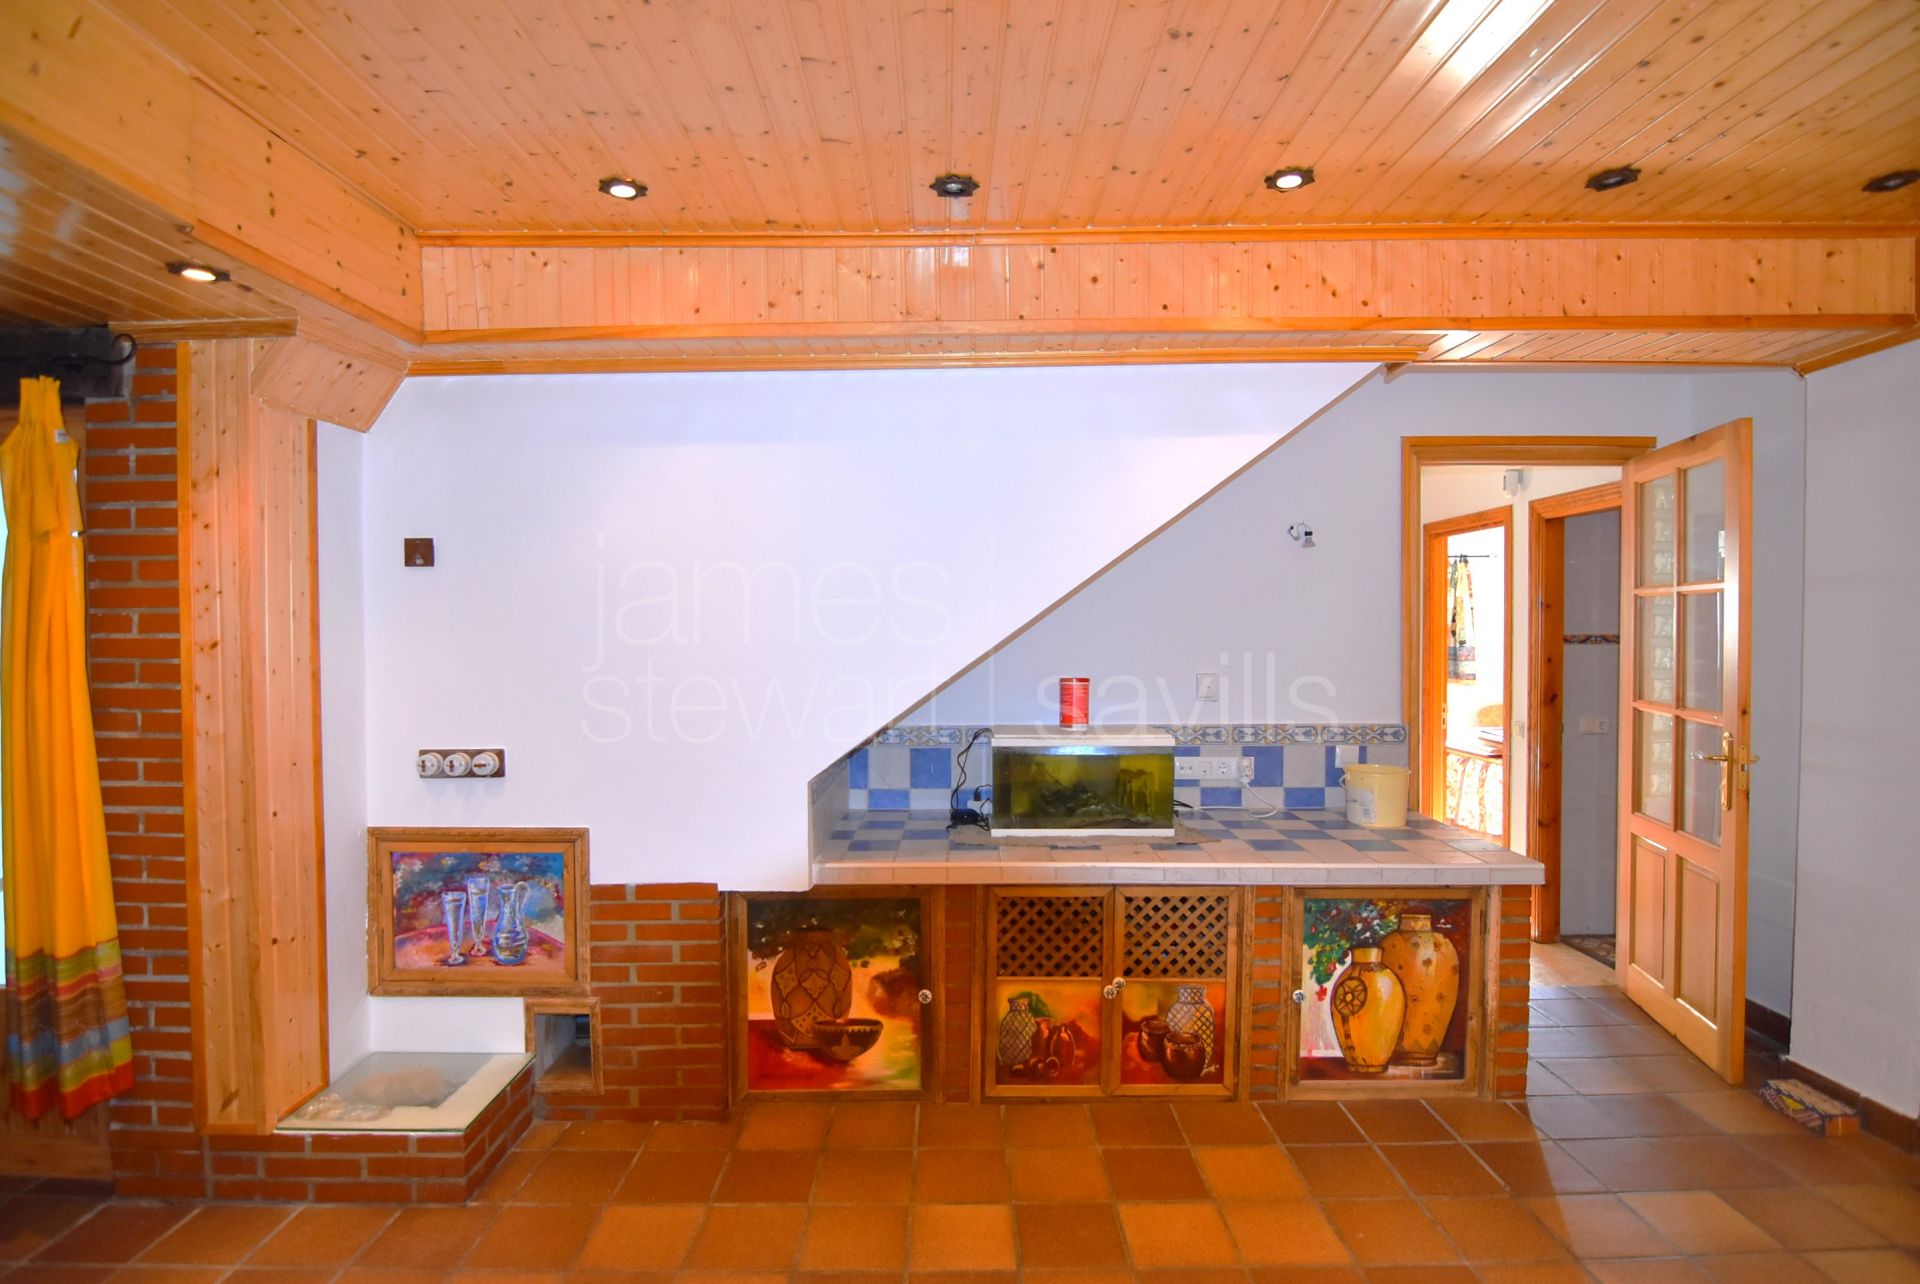 Casa adosada cerca de la playa de Torreguadiaro: Una casa familiar ideal